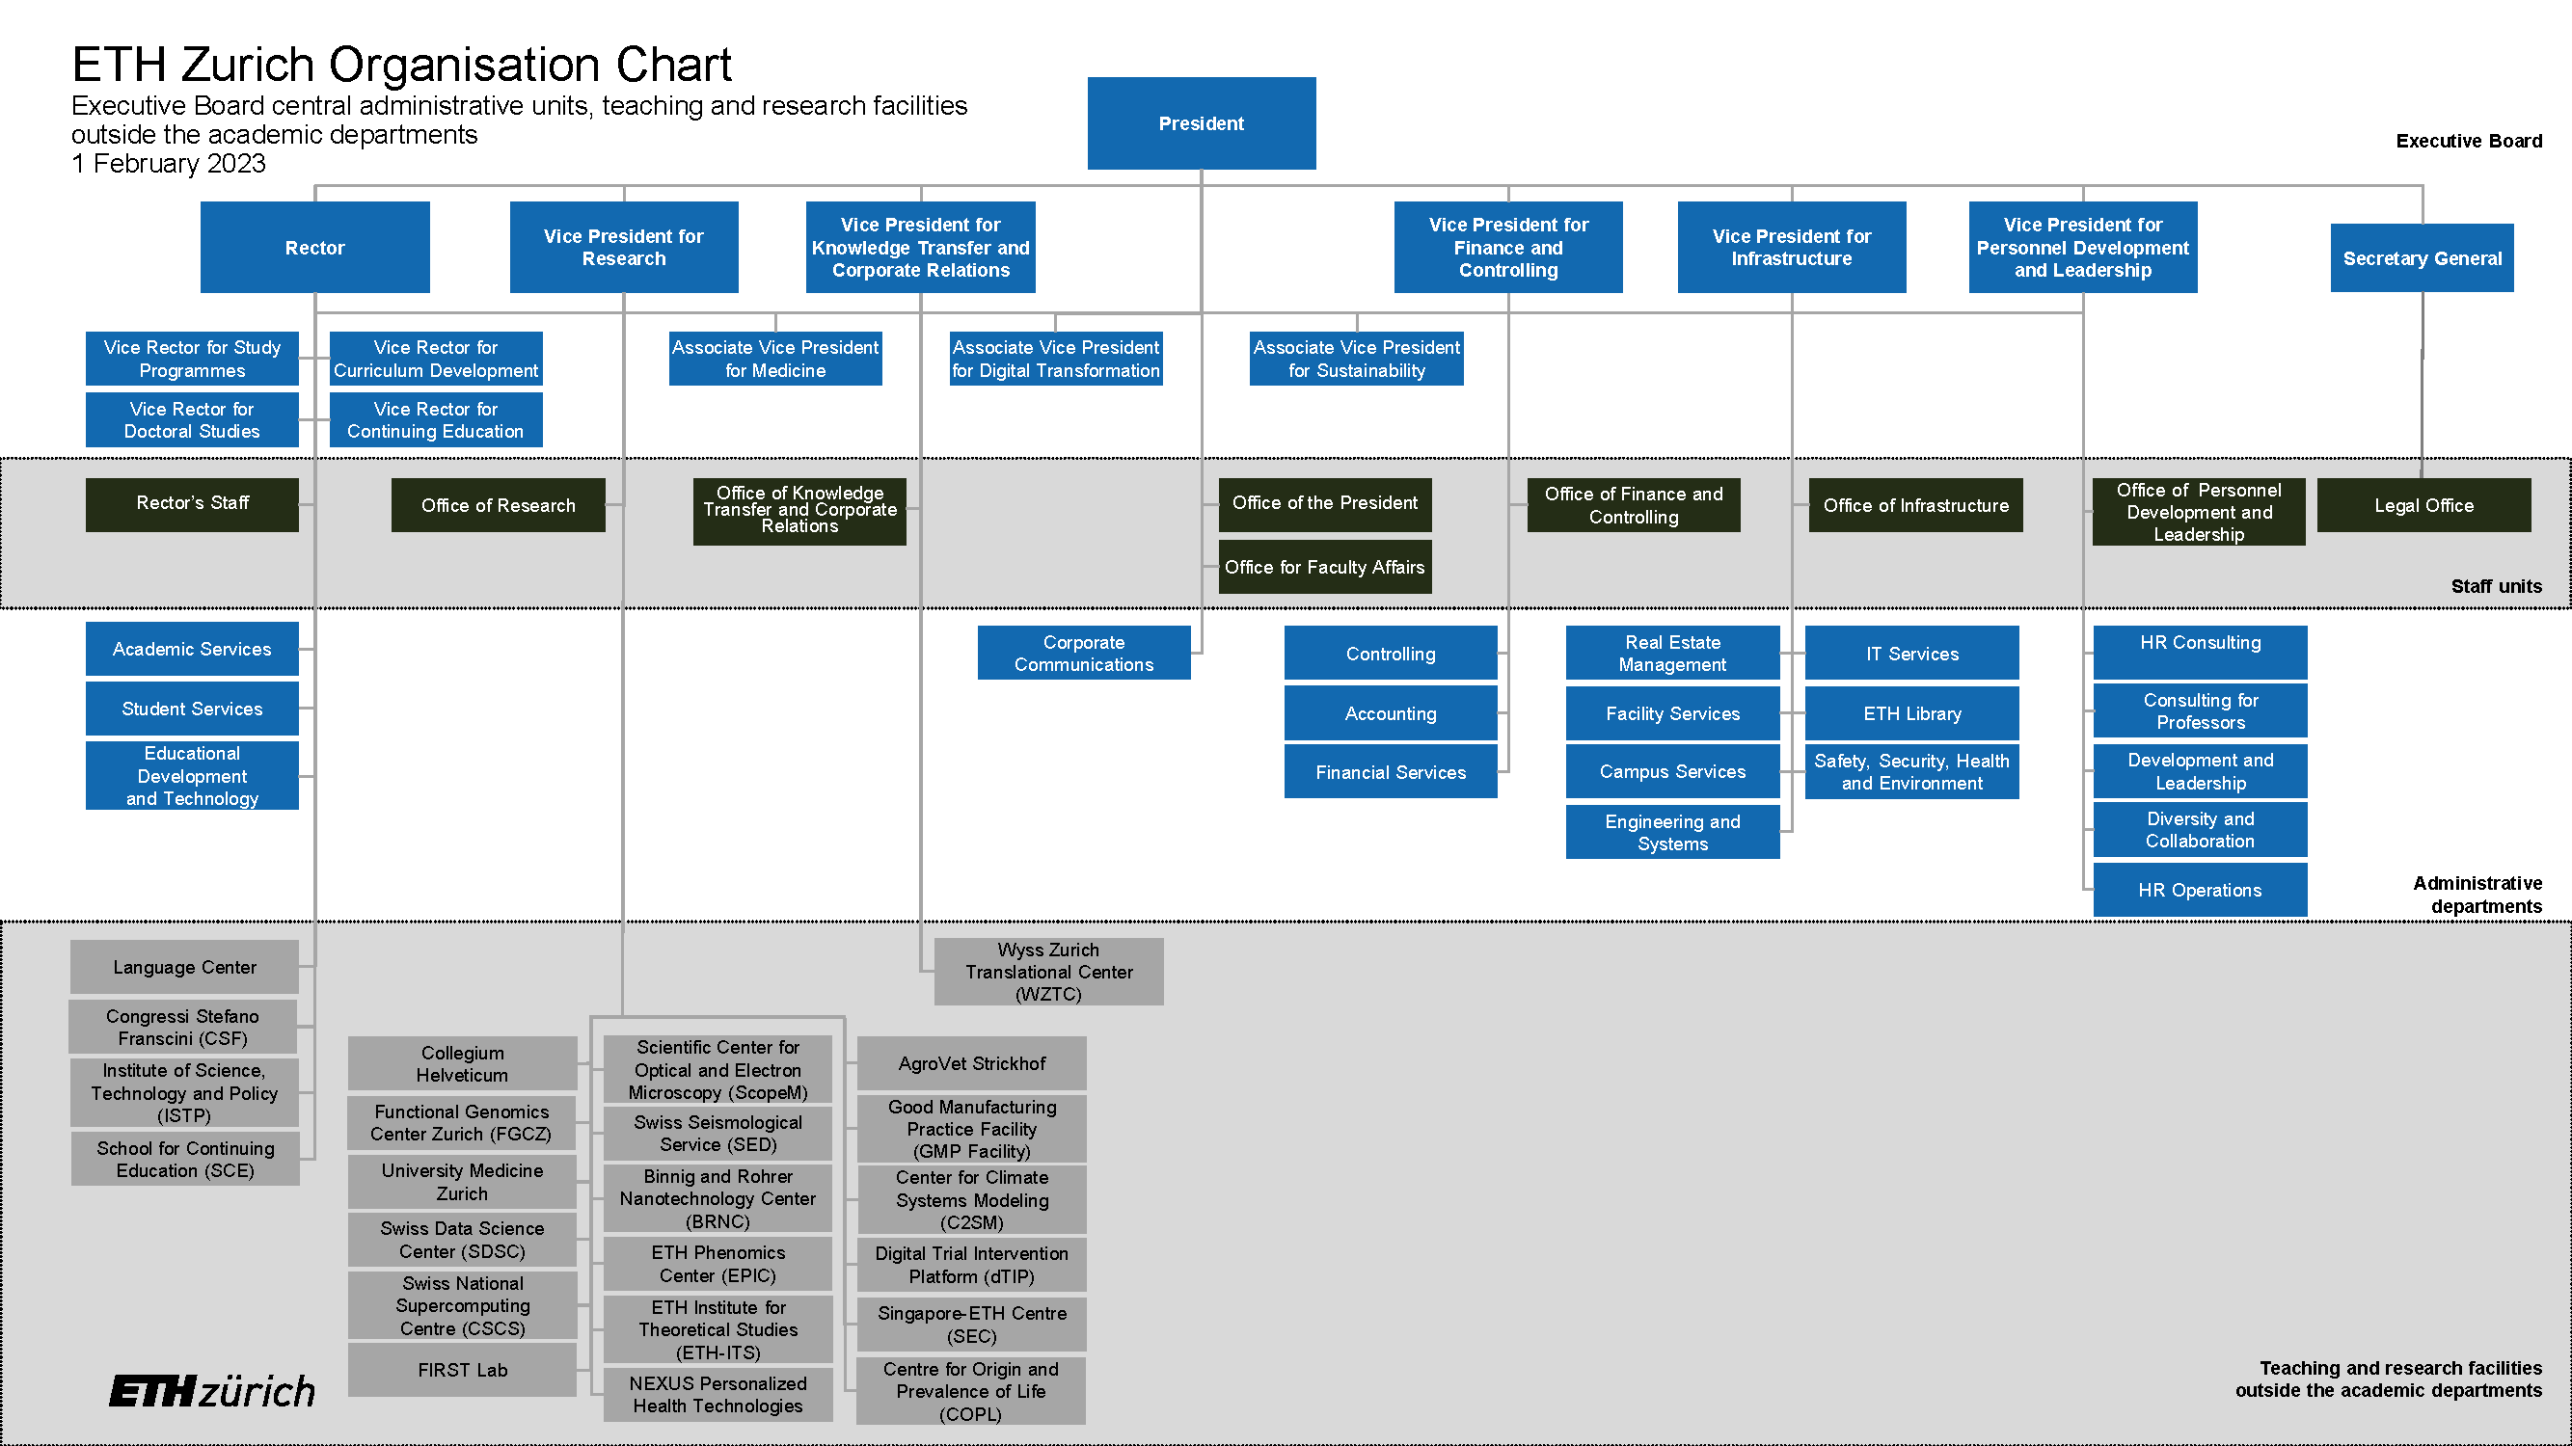 Enlarged view: Organisation chart ETH Zurich 